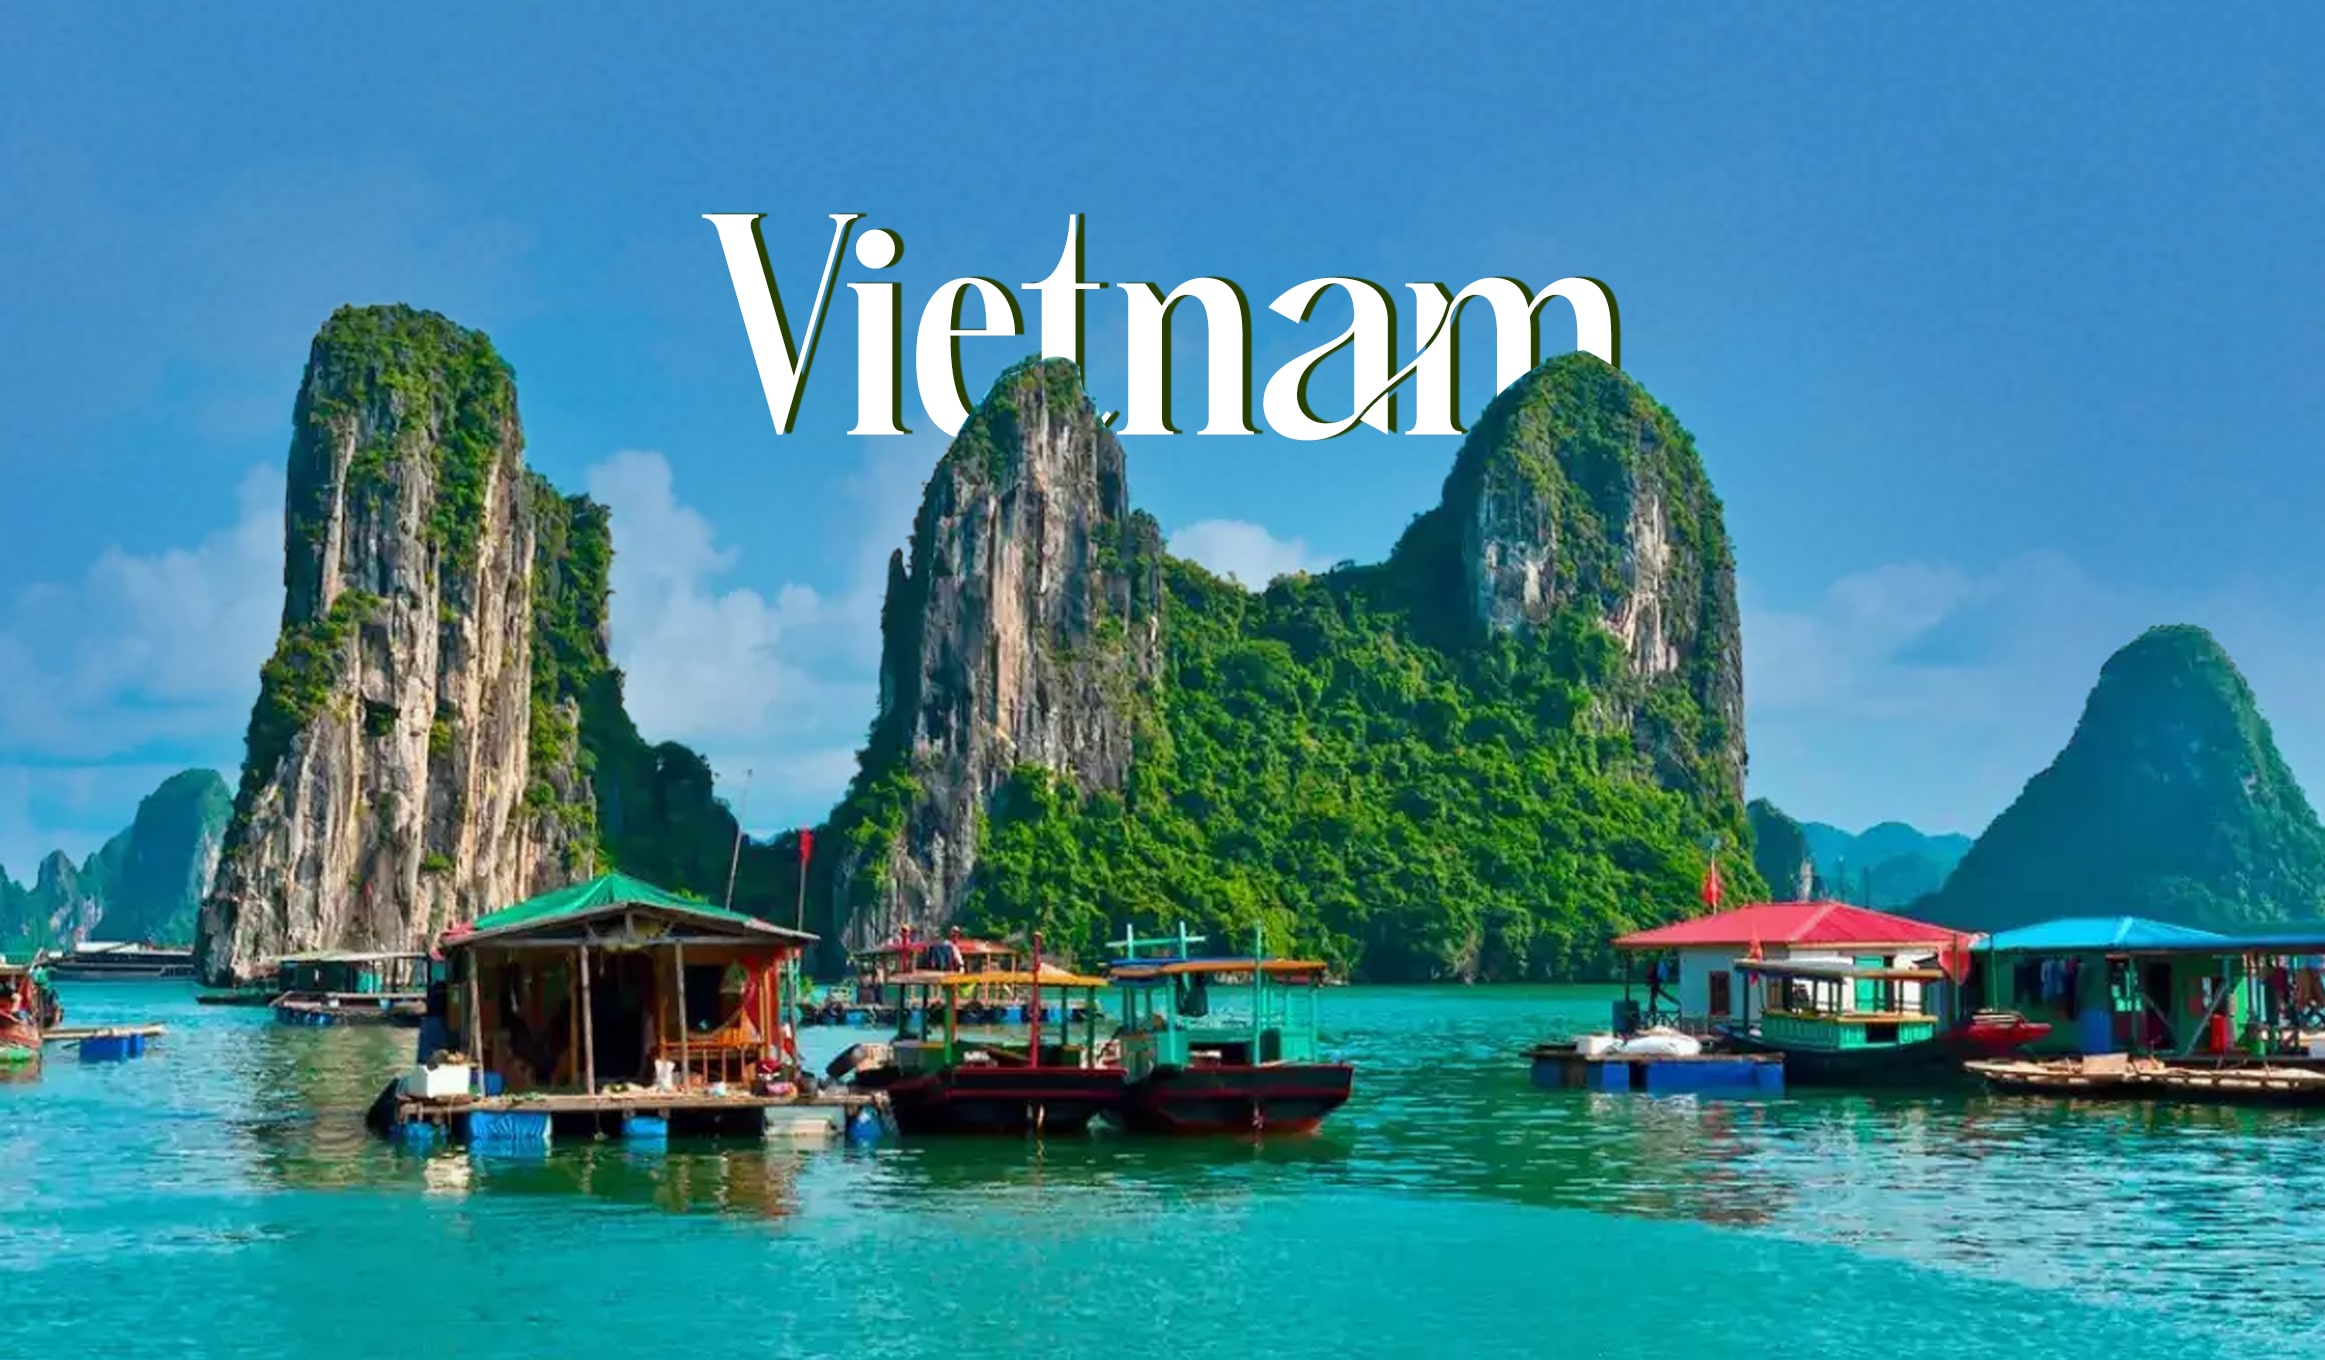 Vietnam – Hanoi (Spring Holidays)